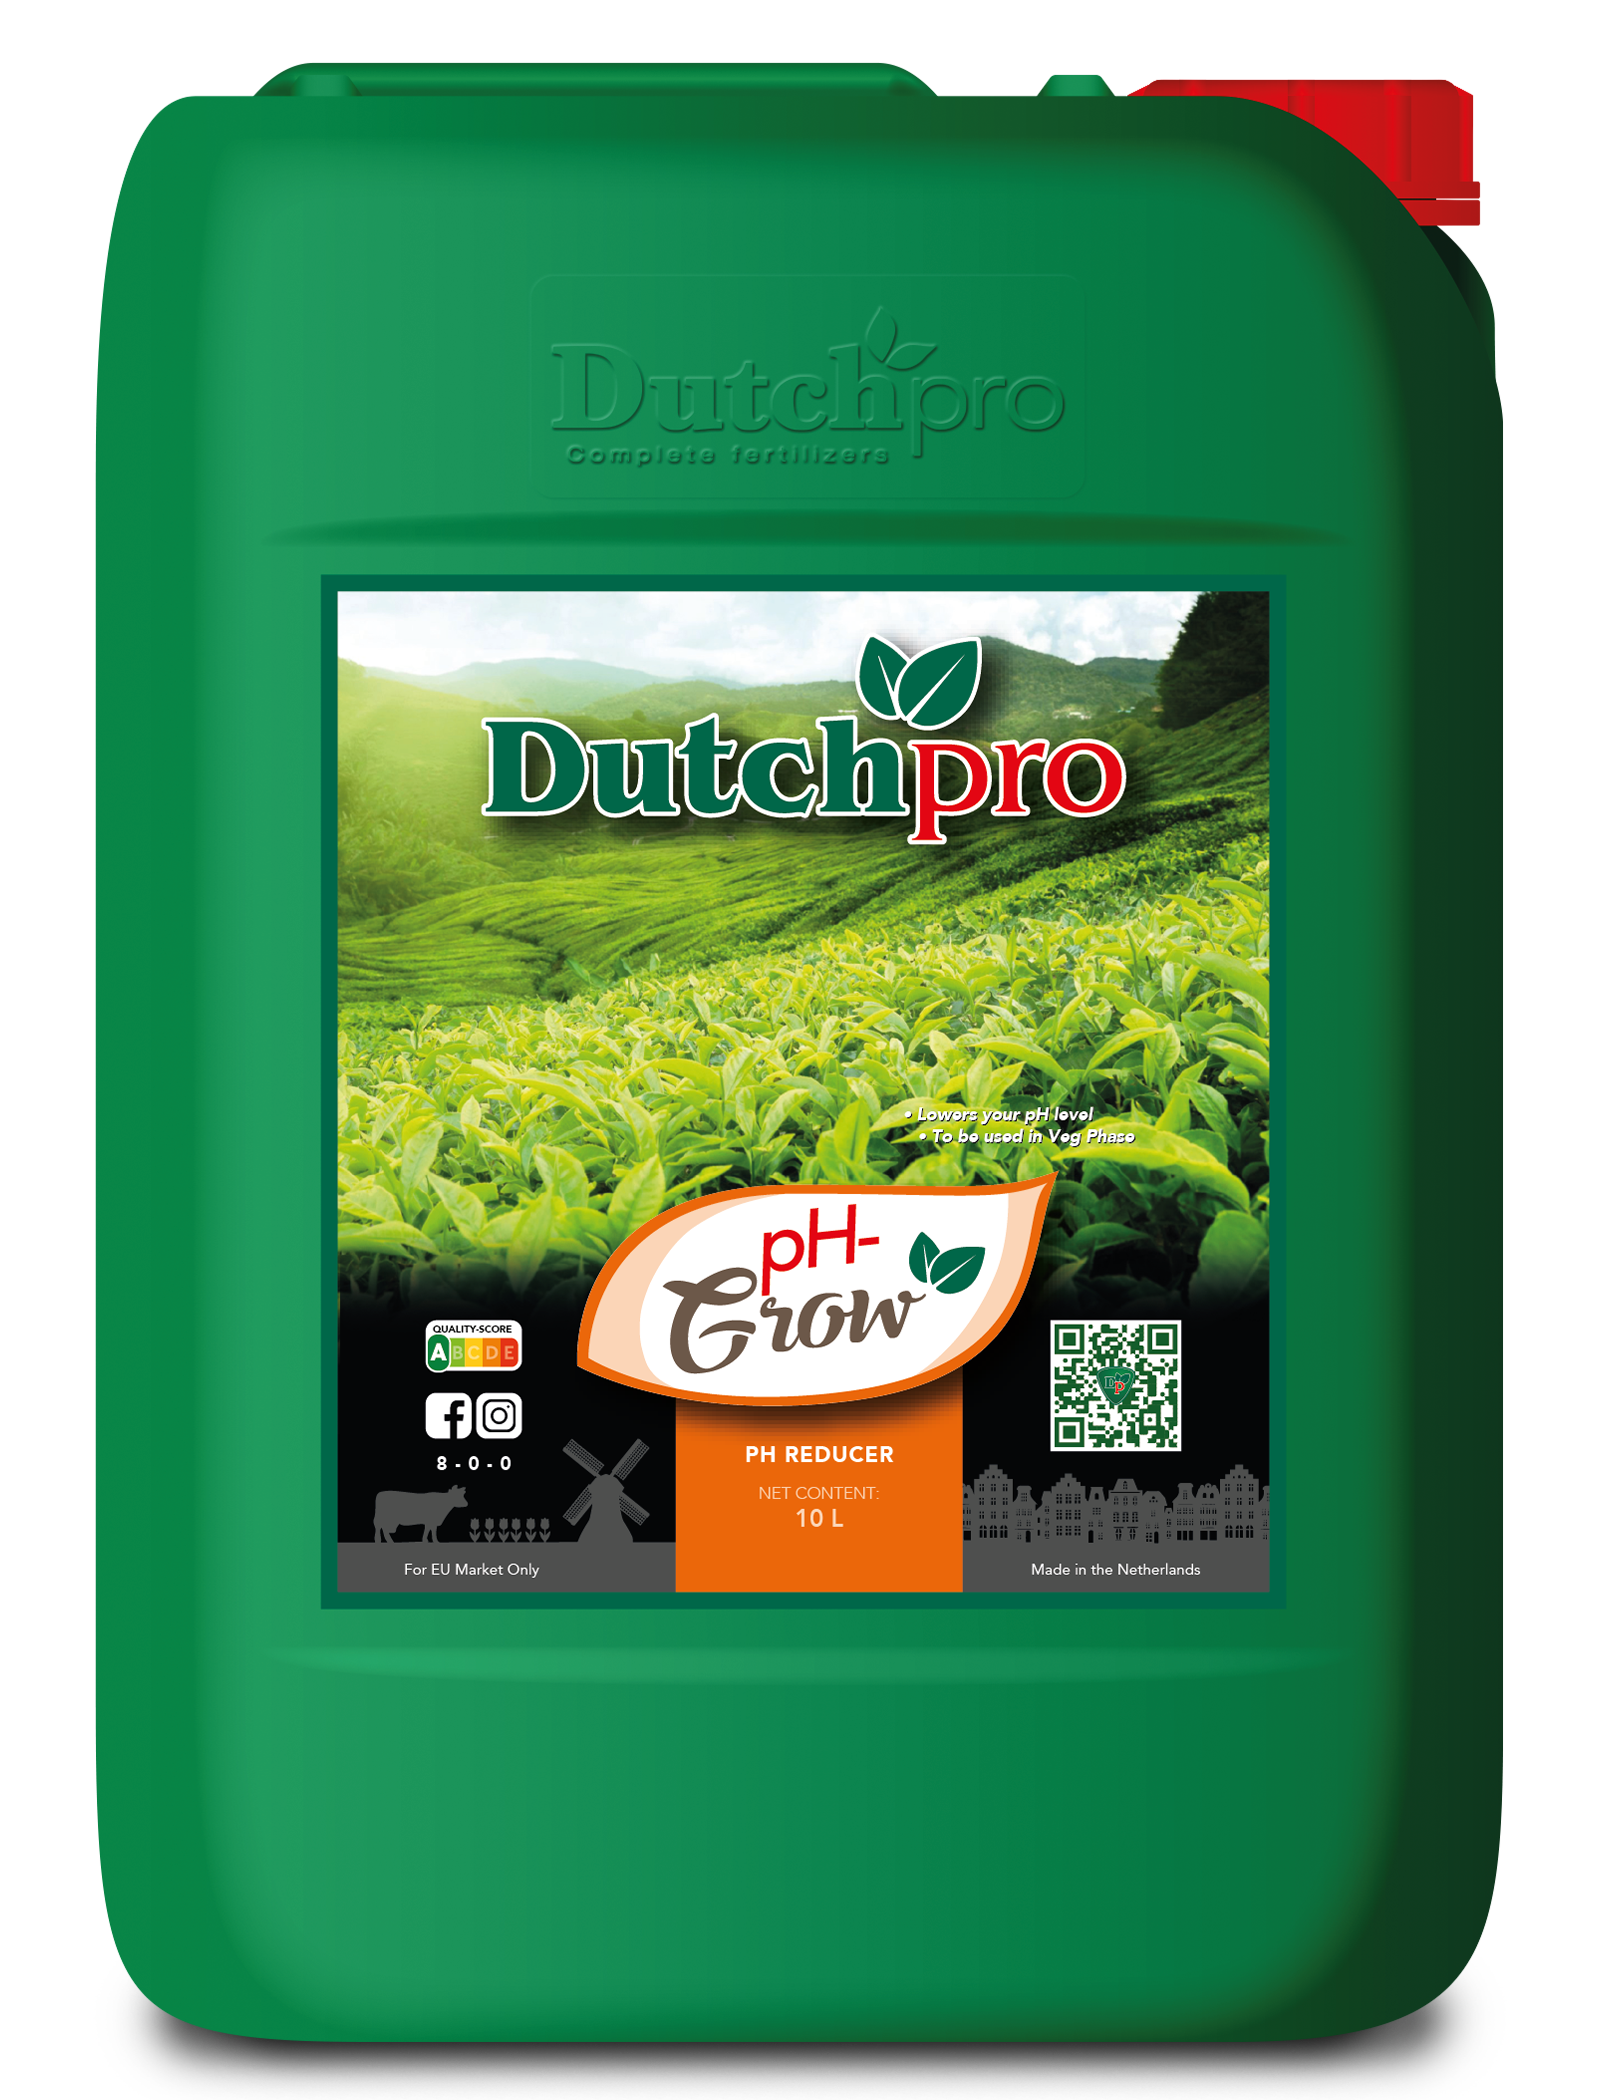 Dutchpro pH- Grow